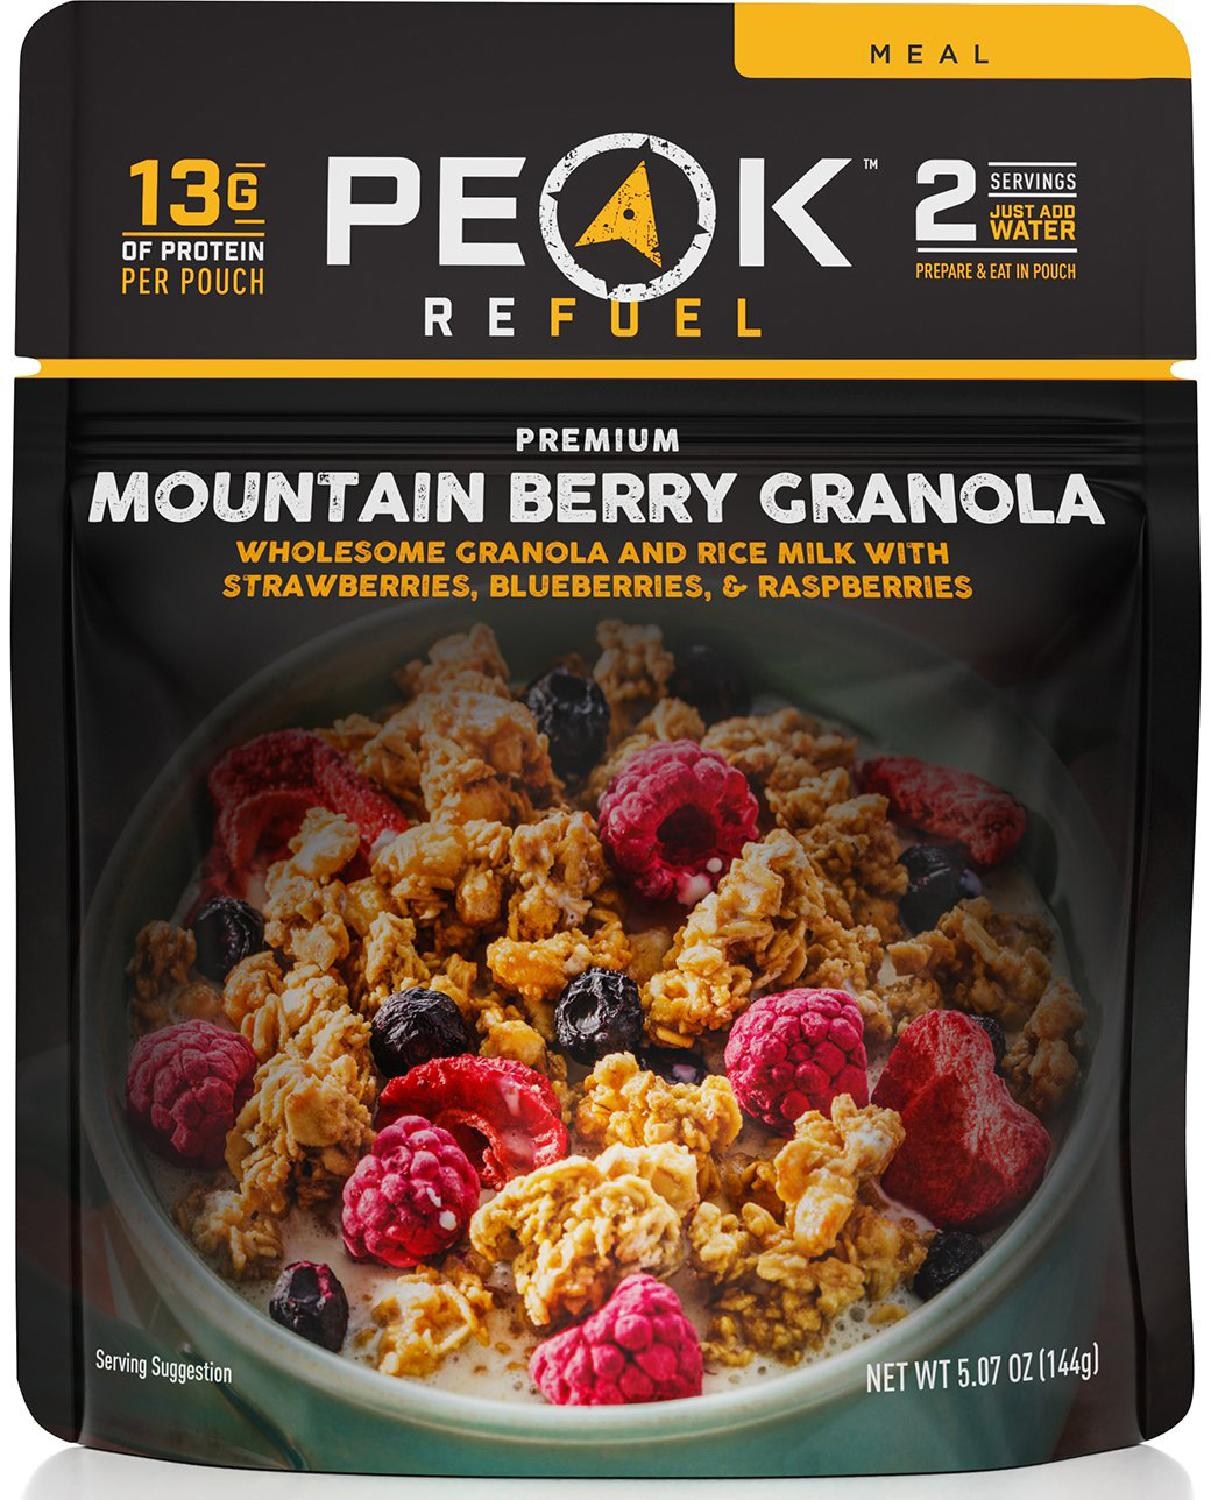 Гранола с горными ягодами — 2 порции PEAK REFUEL